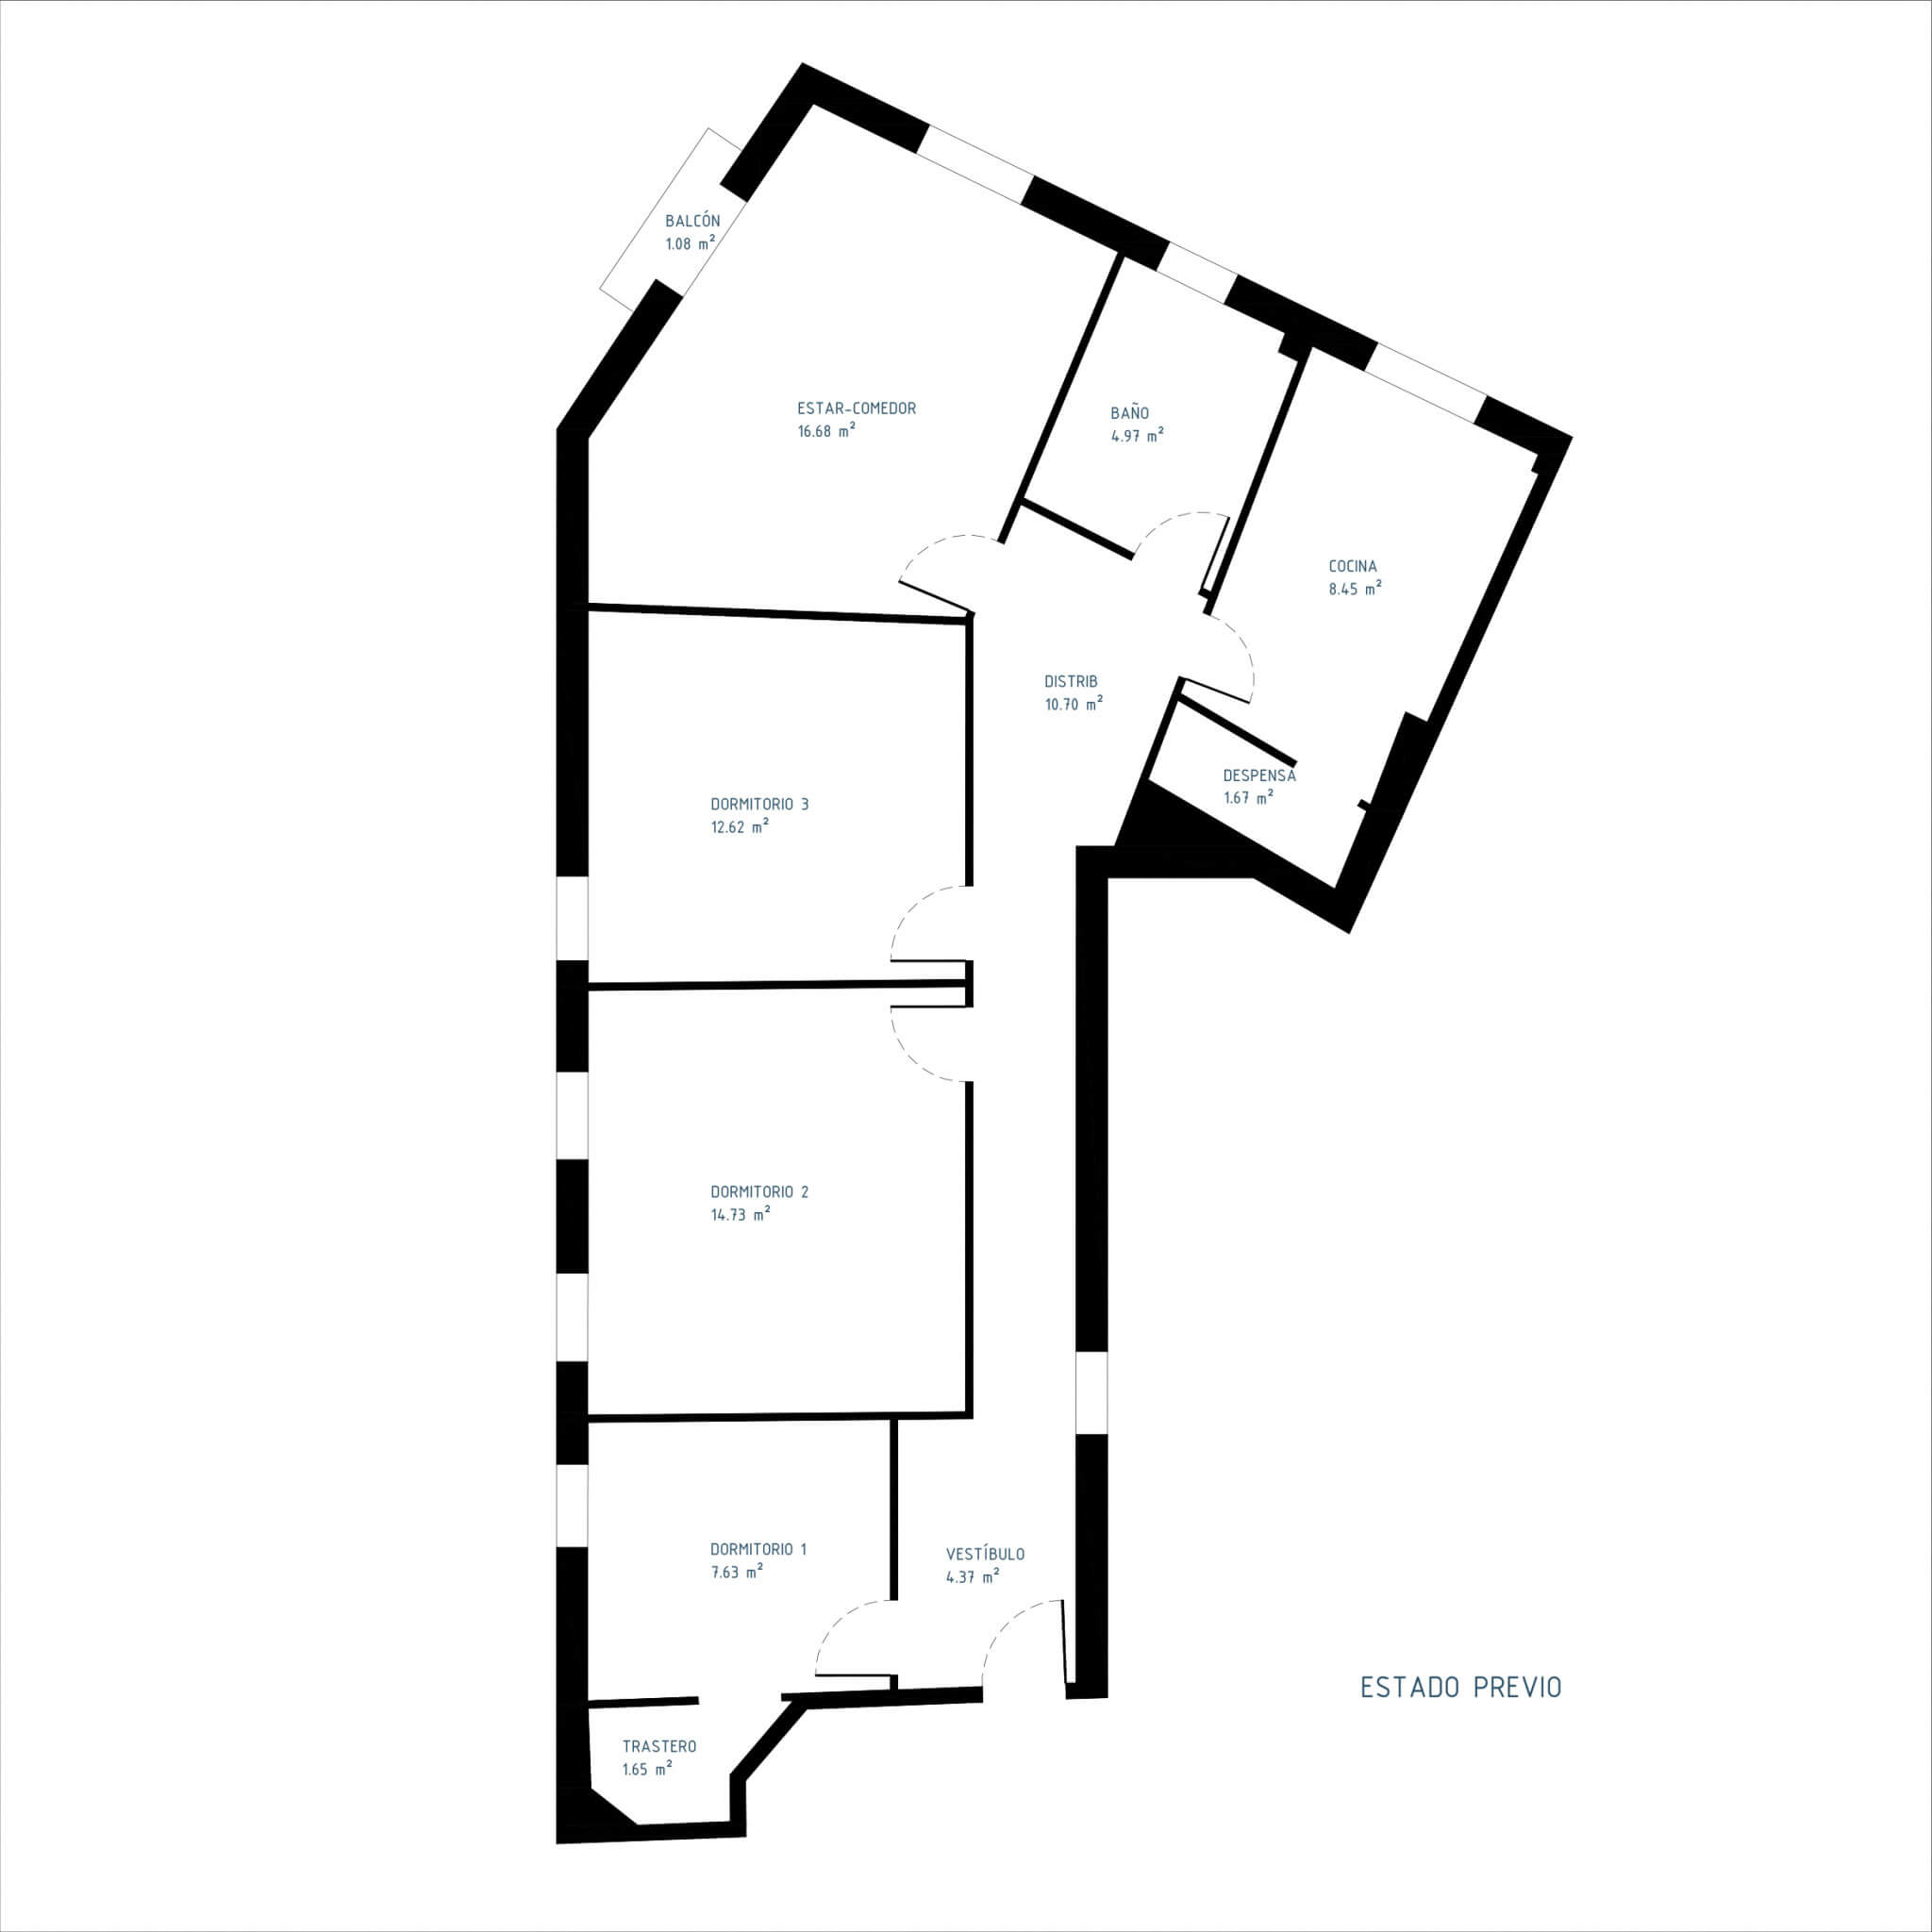 Plano del estado previo de la vivienda. Proyecto de R de Room.